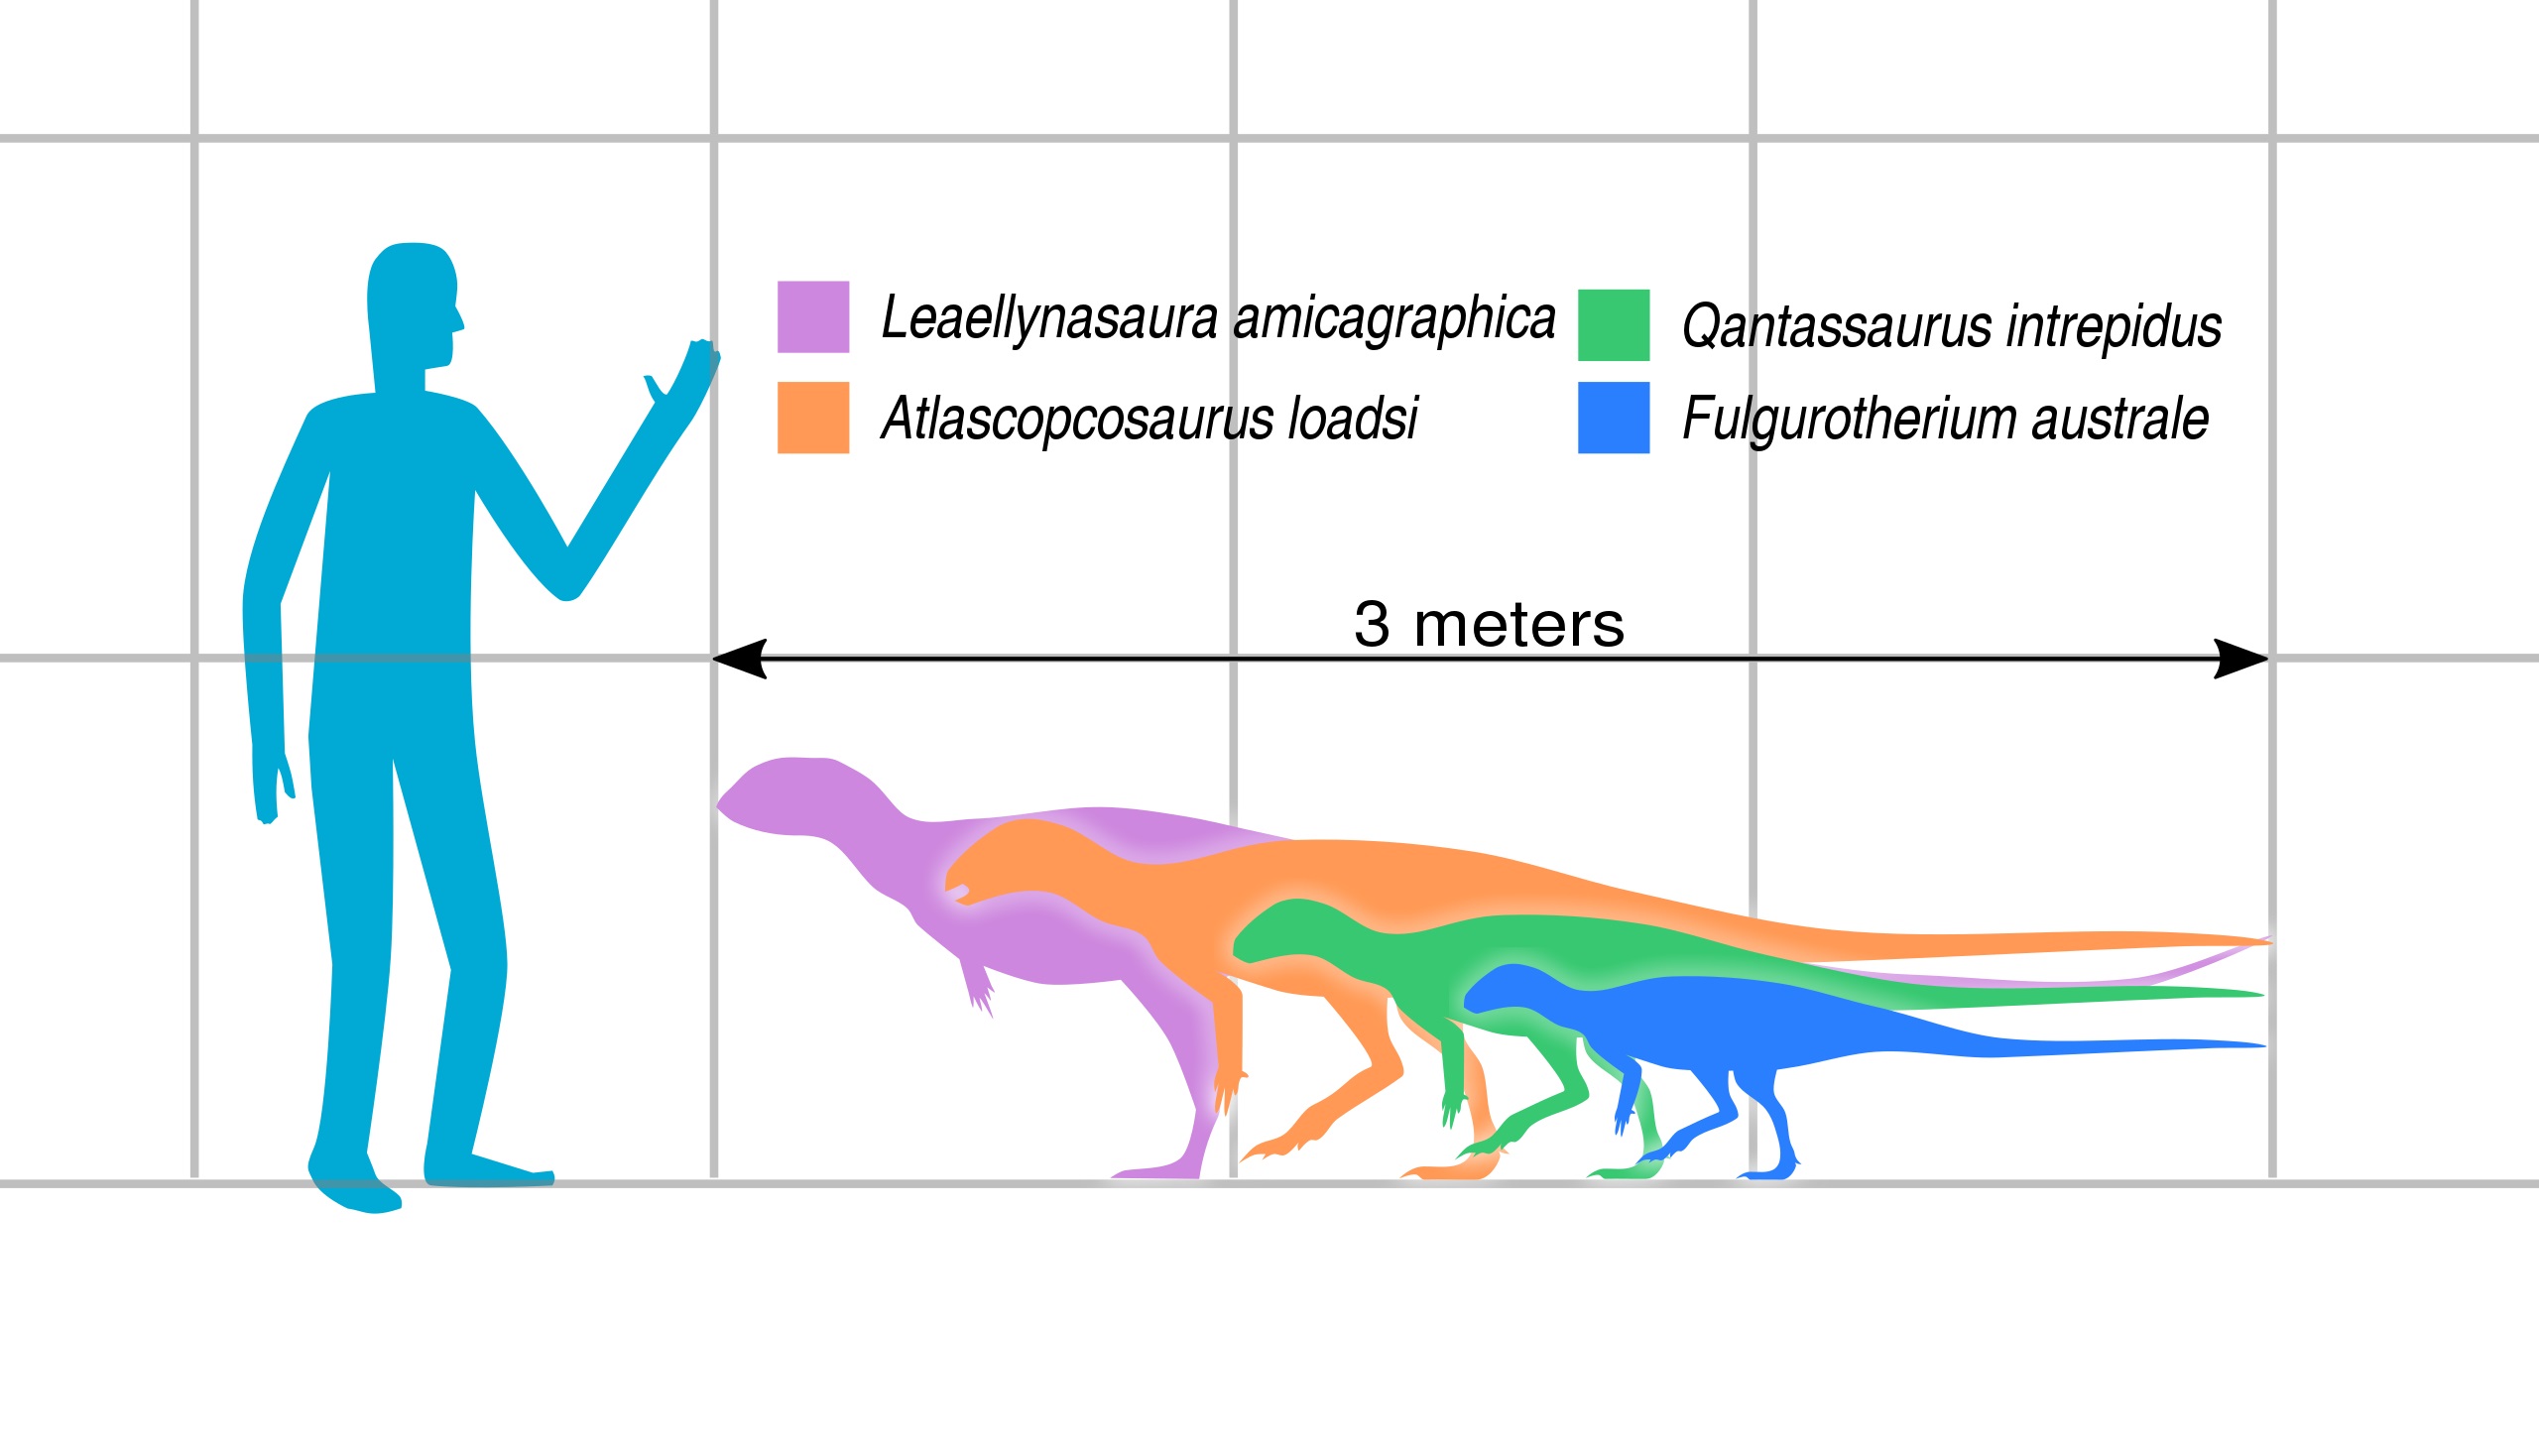 Velikostní porovnání dospělého člověka a několika raně až pozdně křídových ptakopánvých dinosaurů z území Austrálie. Atlascopcosaurus (oranžová silueta) patřil s hmotností statného berana k poměrně velkým zástupcům této skupiny dinosaurů. Kredit: Sla